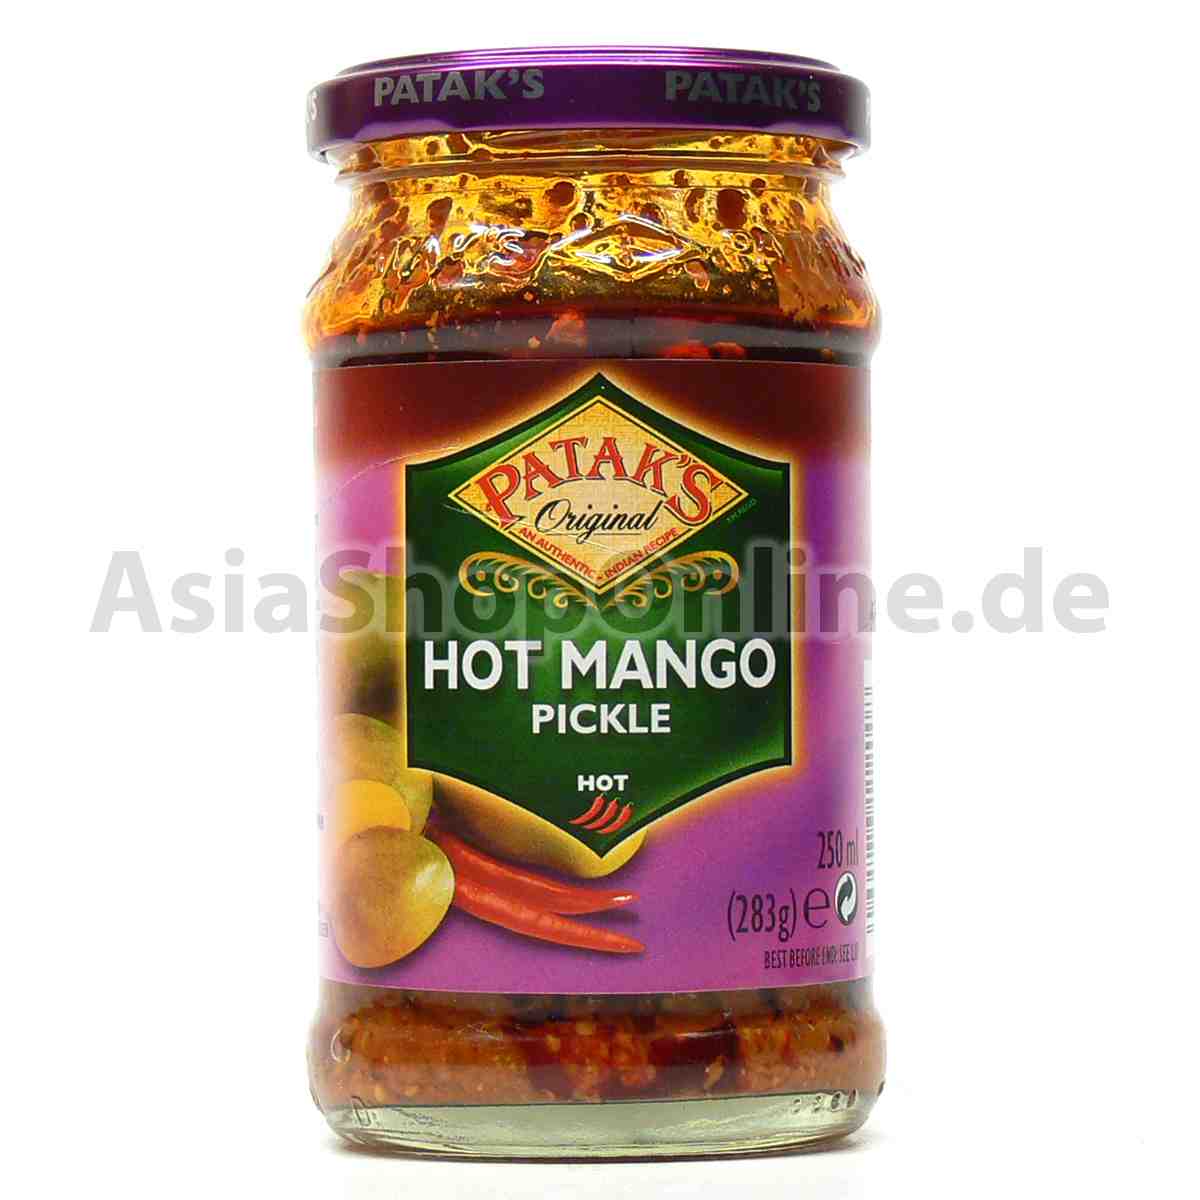 Hot Mango Pickle - Pataks - 283g